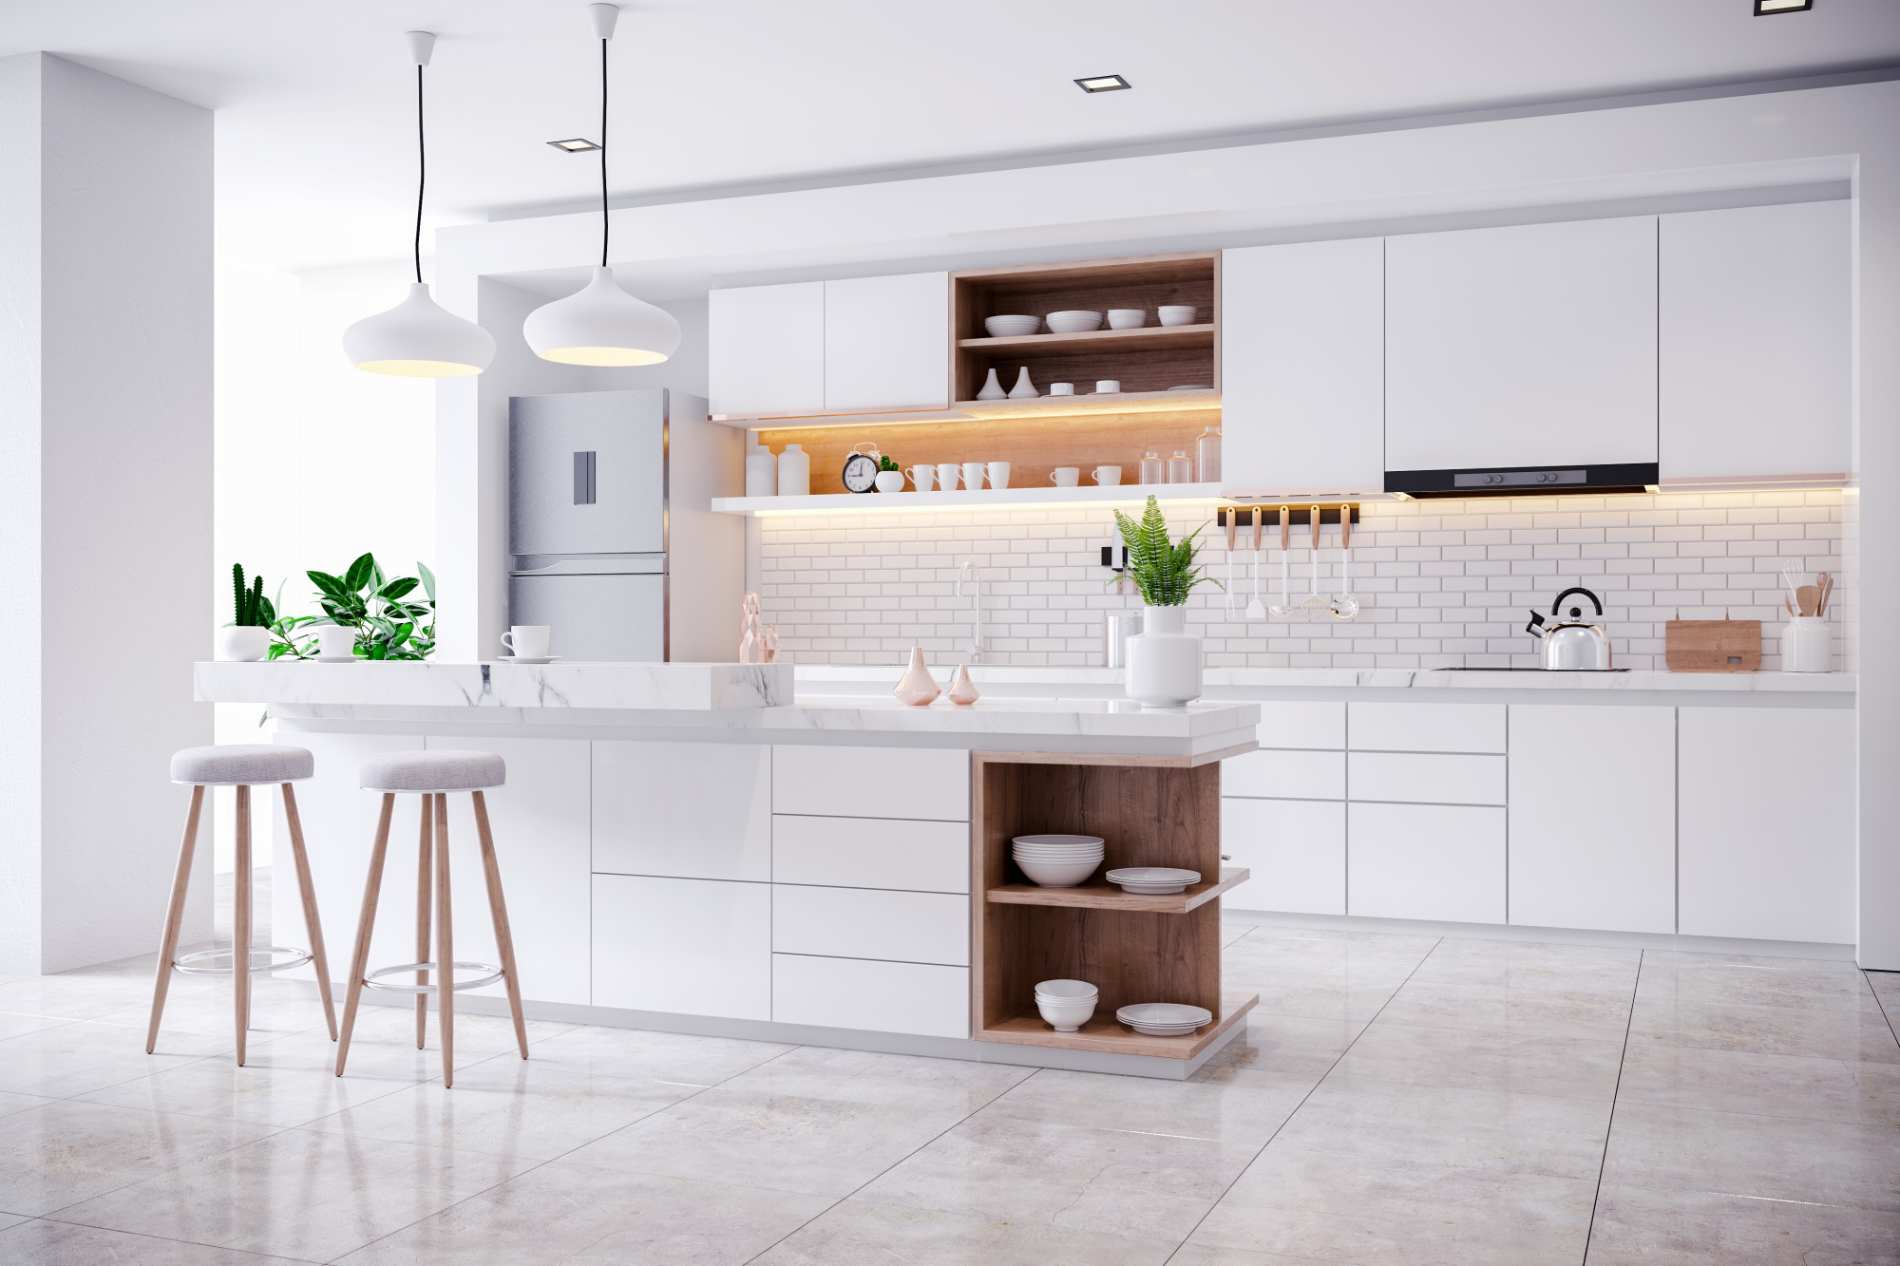 Šiais laikais virtuvės baldų pasirinkimas labai didelis. Tačiau, svarbu juos renkantis atkreipti dėmesį į virtuvės dydį ir išplanavimą, ir stengtis, kad virtuvės stilius derėtų prie visos gyvenamosios patalpos stiliaus.